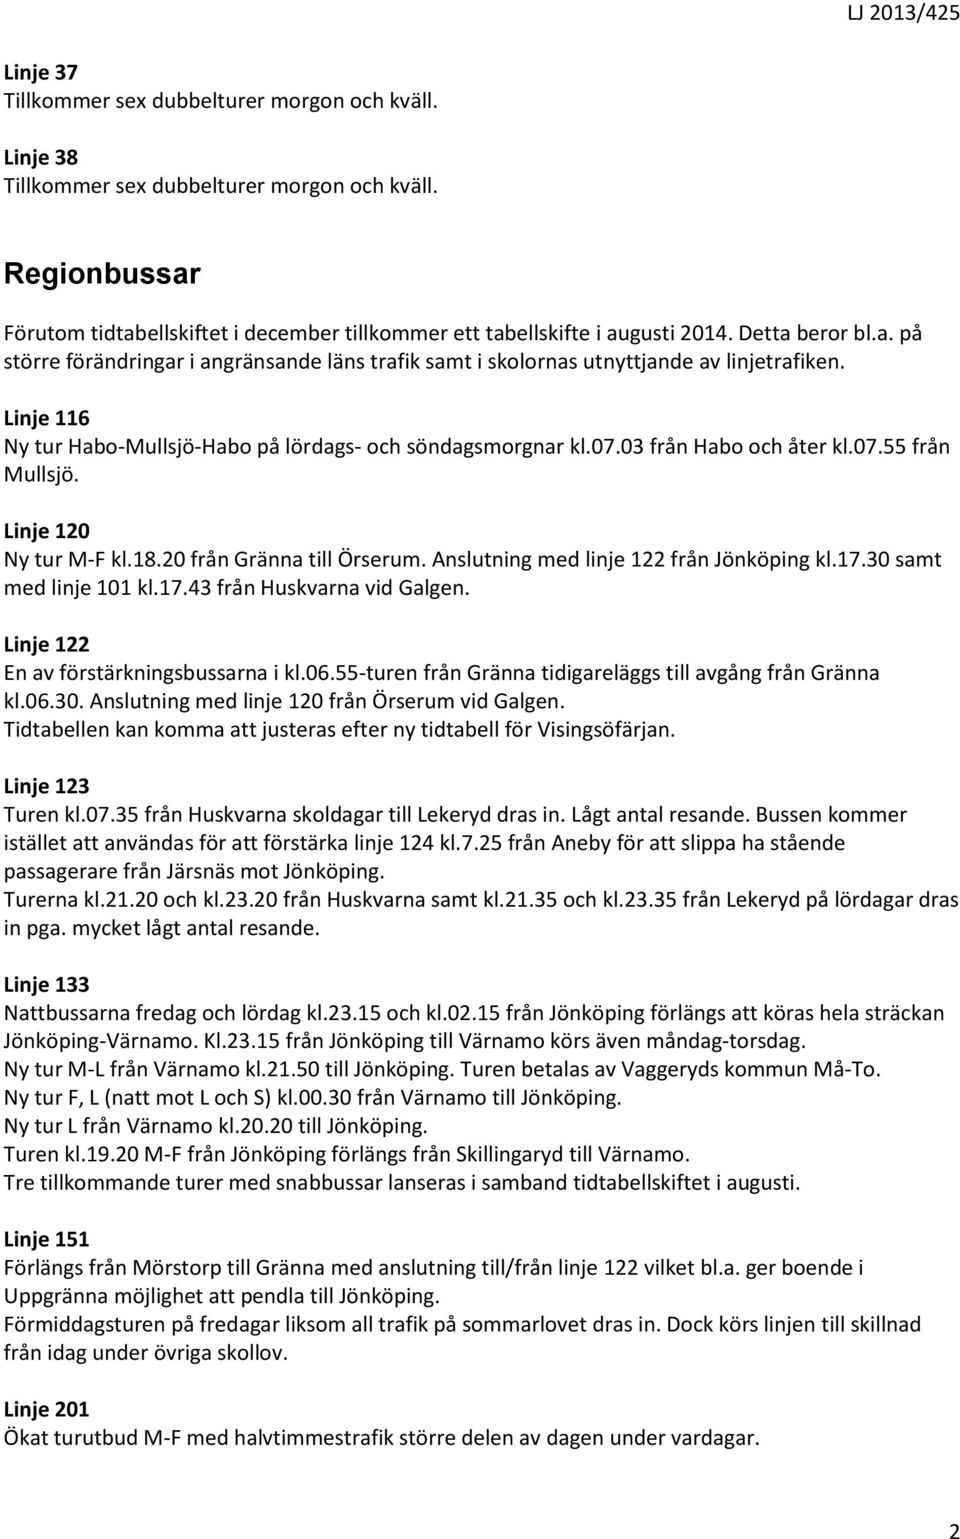 03 från Habo och åter kl.07.55 från Mullsjö. Linje 120 Ny tur M-F kl.18.20 från Gränna till Örserum. Anslutning med linje 122 från Jönköping kl.17.30 samt med linje 101 kl.17.43 från Huskvarna vid Galgen.